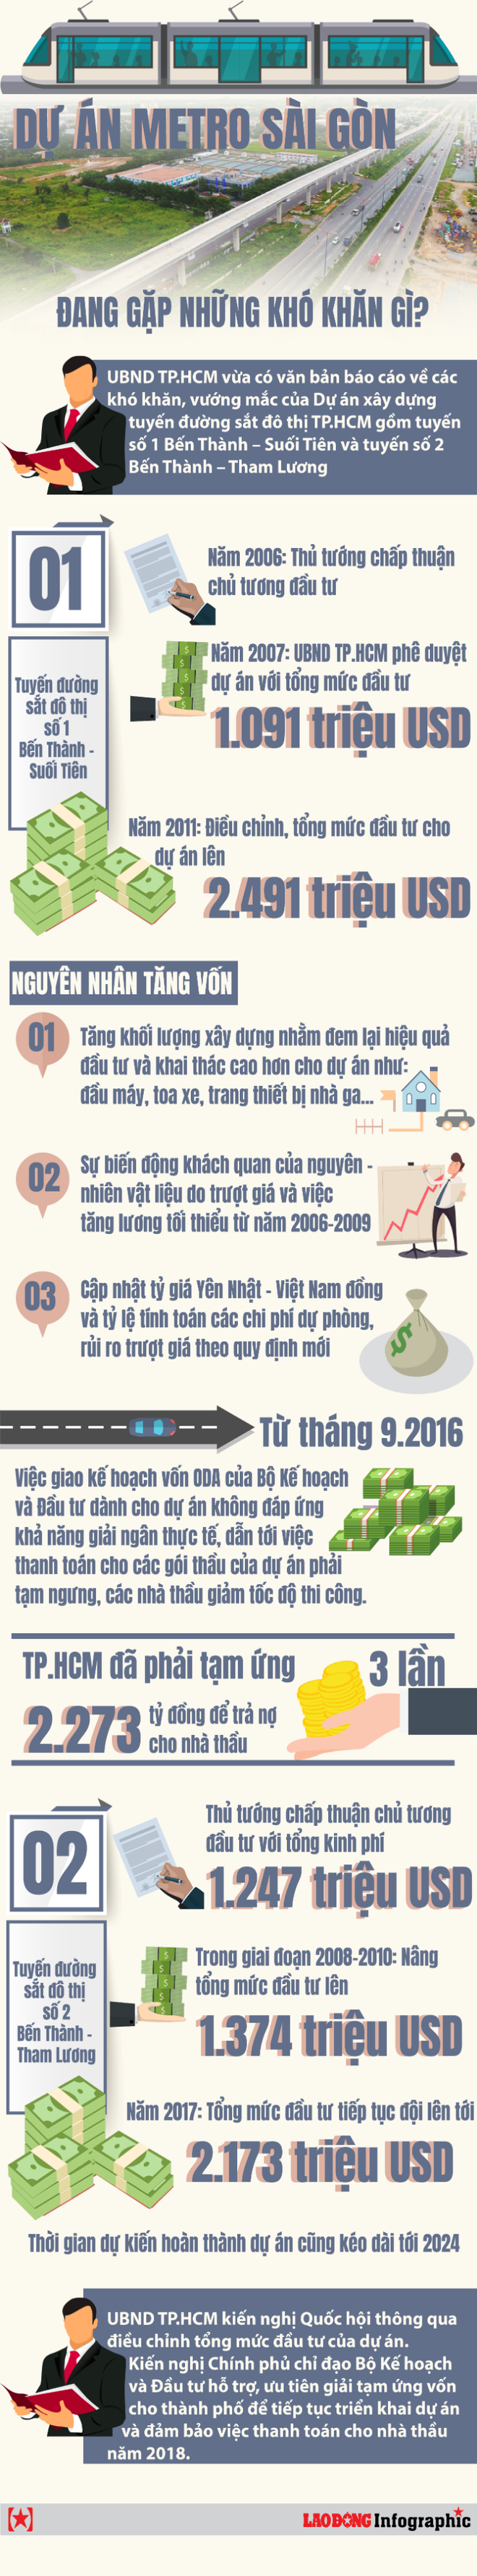 [Infographic] Dự án metro Sài Gòn đang gặp những khó khăn gì? - Ảnh 1.